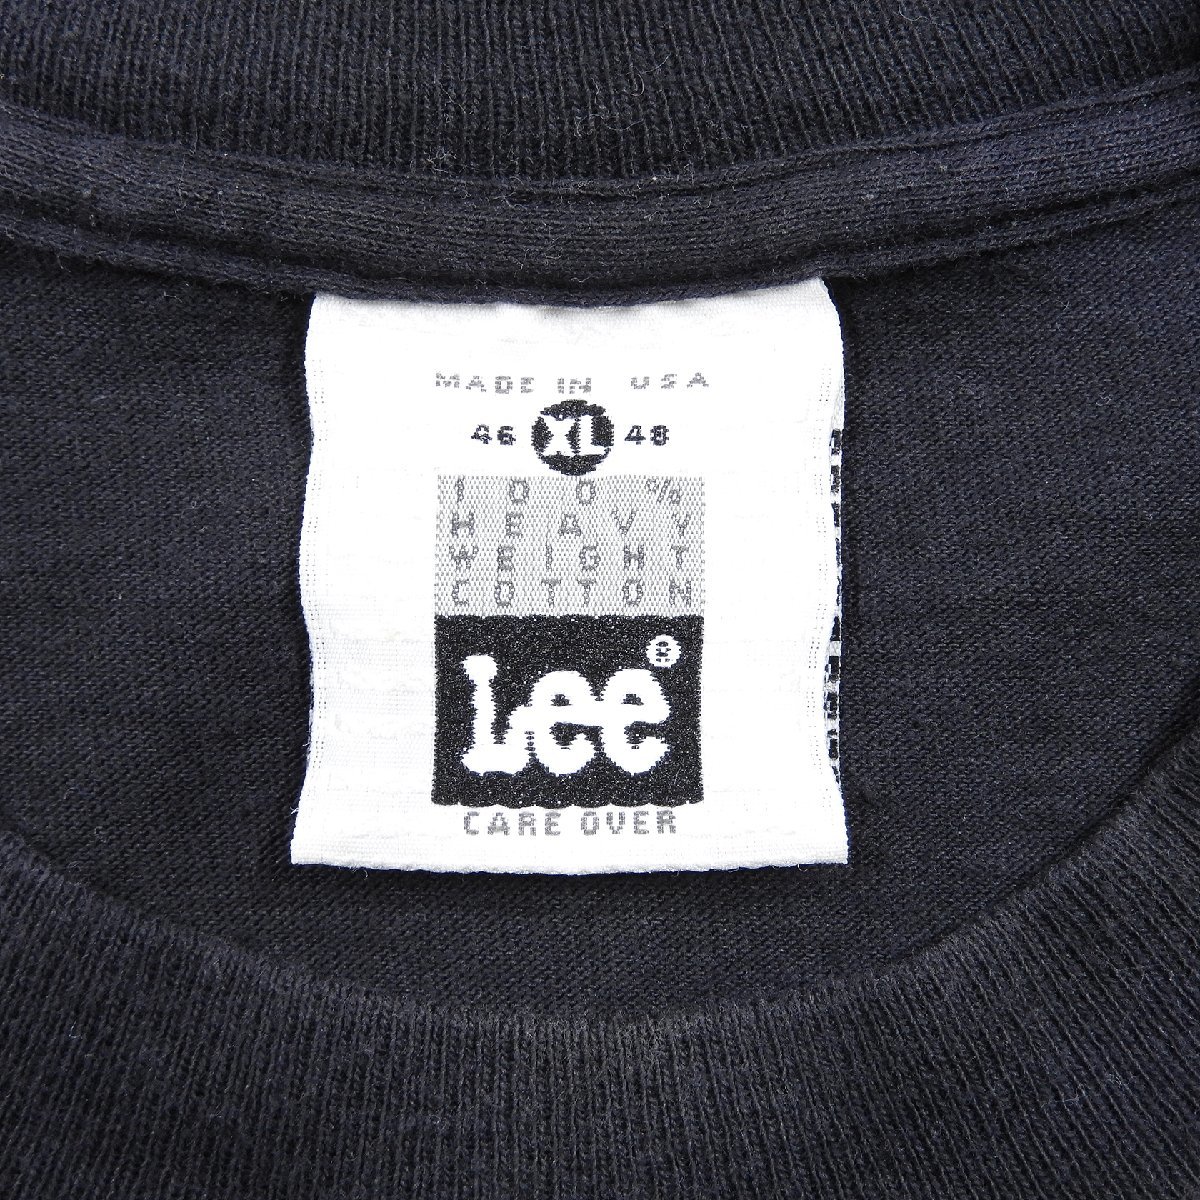 90's NAPPY THREADS ナッピースレッド 半袖Tシャツ ブラック Size XL #13621 送料360円 オールド ストリート アメカジ Lee リー_画像3